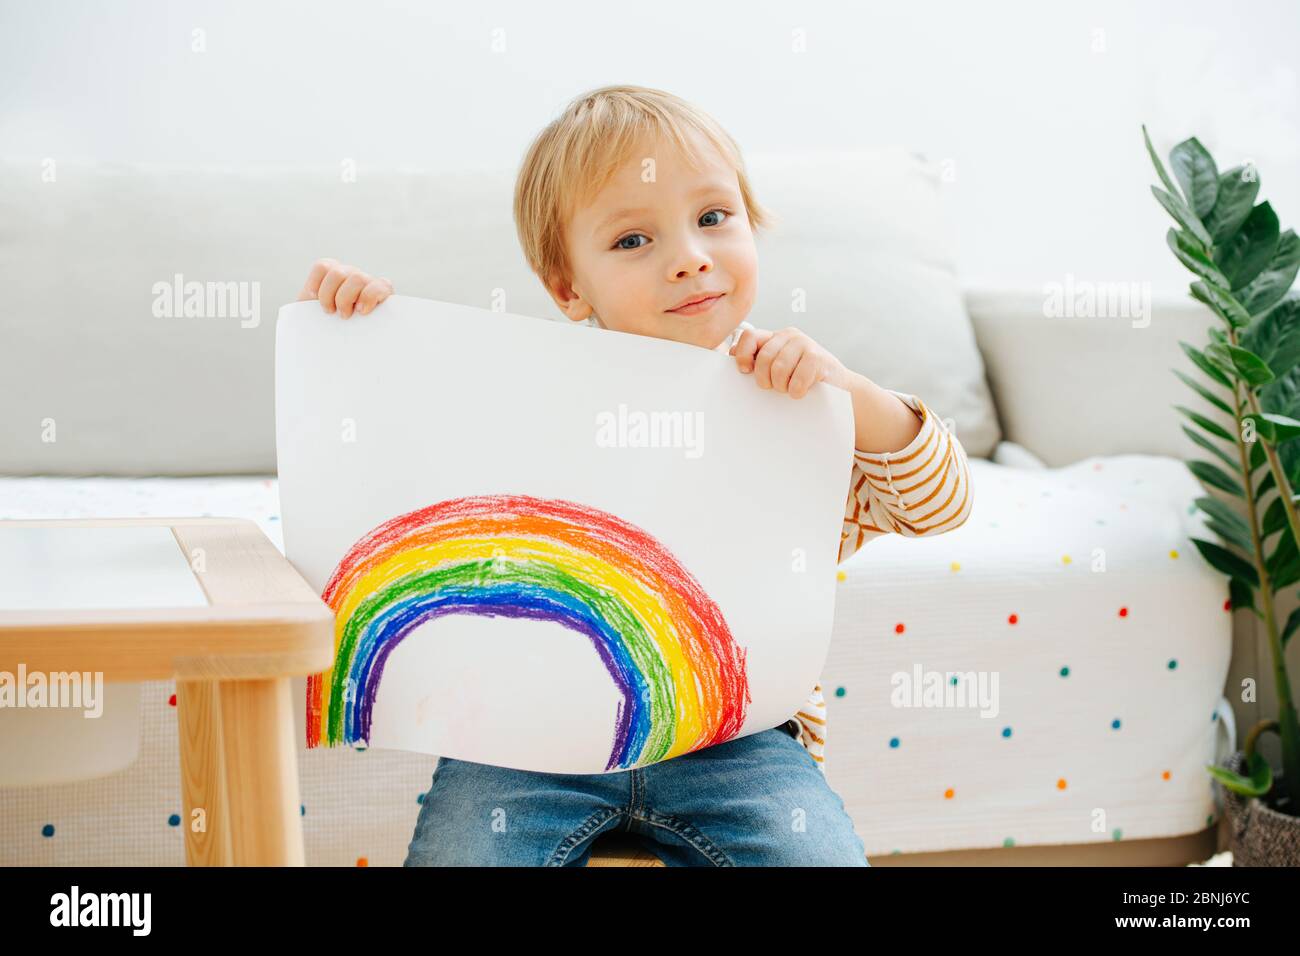 Lindo niño mostrando un arco iris que acaba de pintar en una hoja de papel Foto de stock